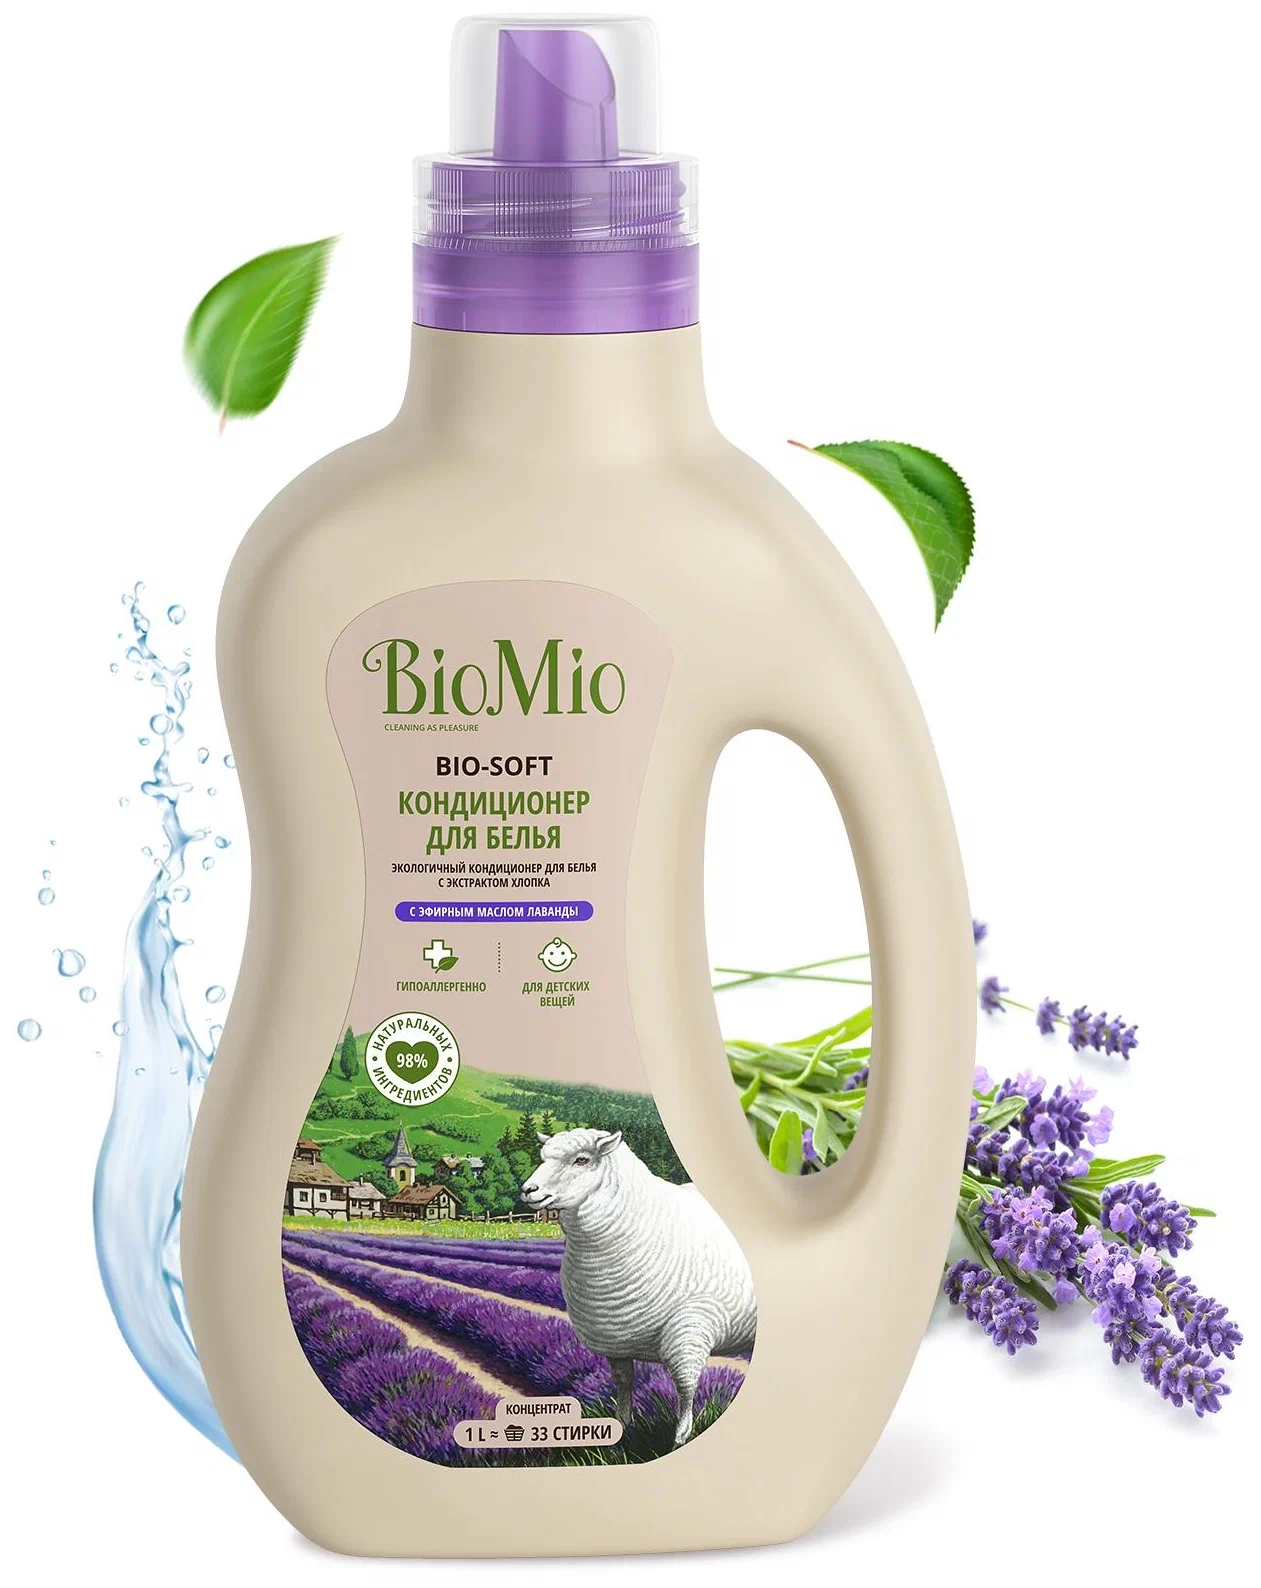 BioMio Кондиционер для белья BIO-SOFT с эфирным маслом лаванды и экстрактом хлопка, 1 л